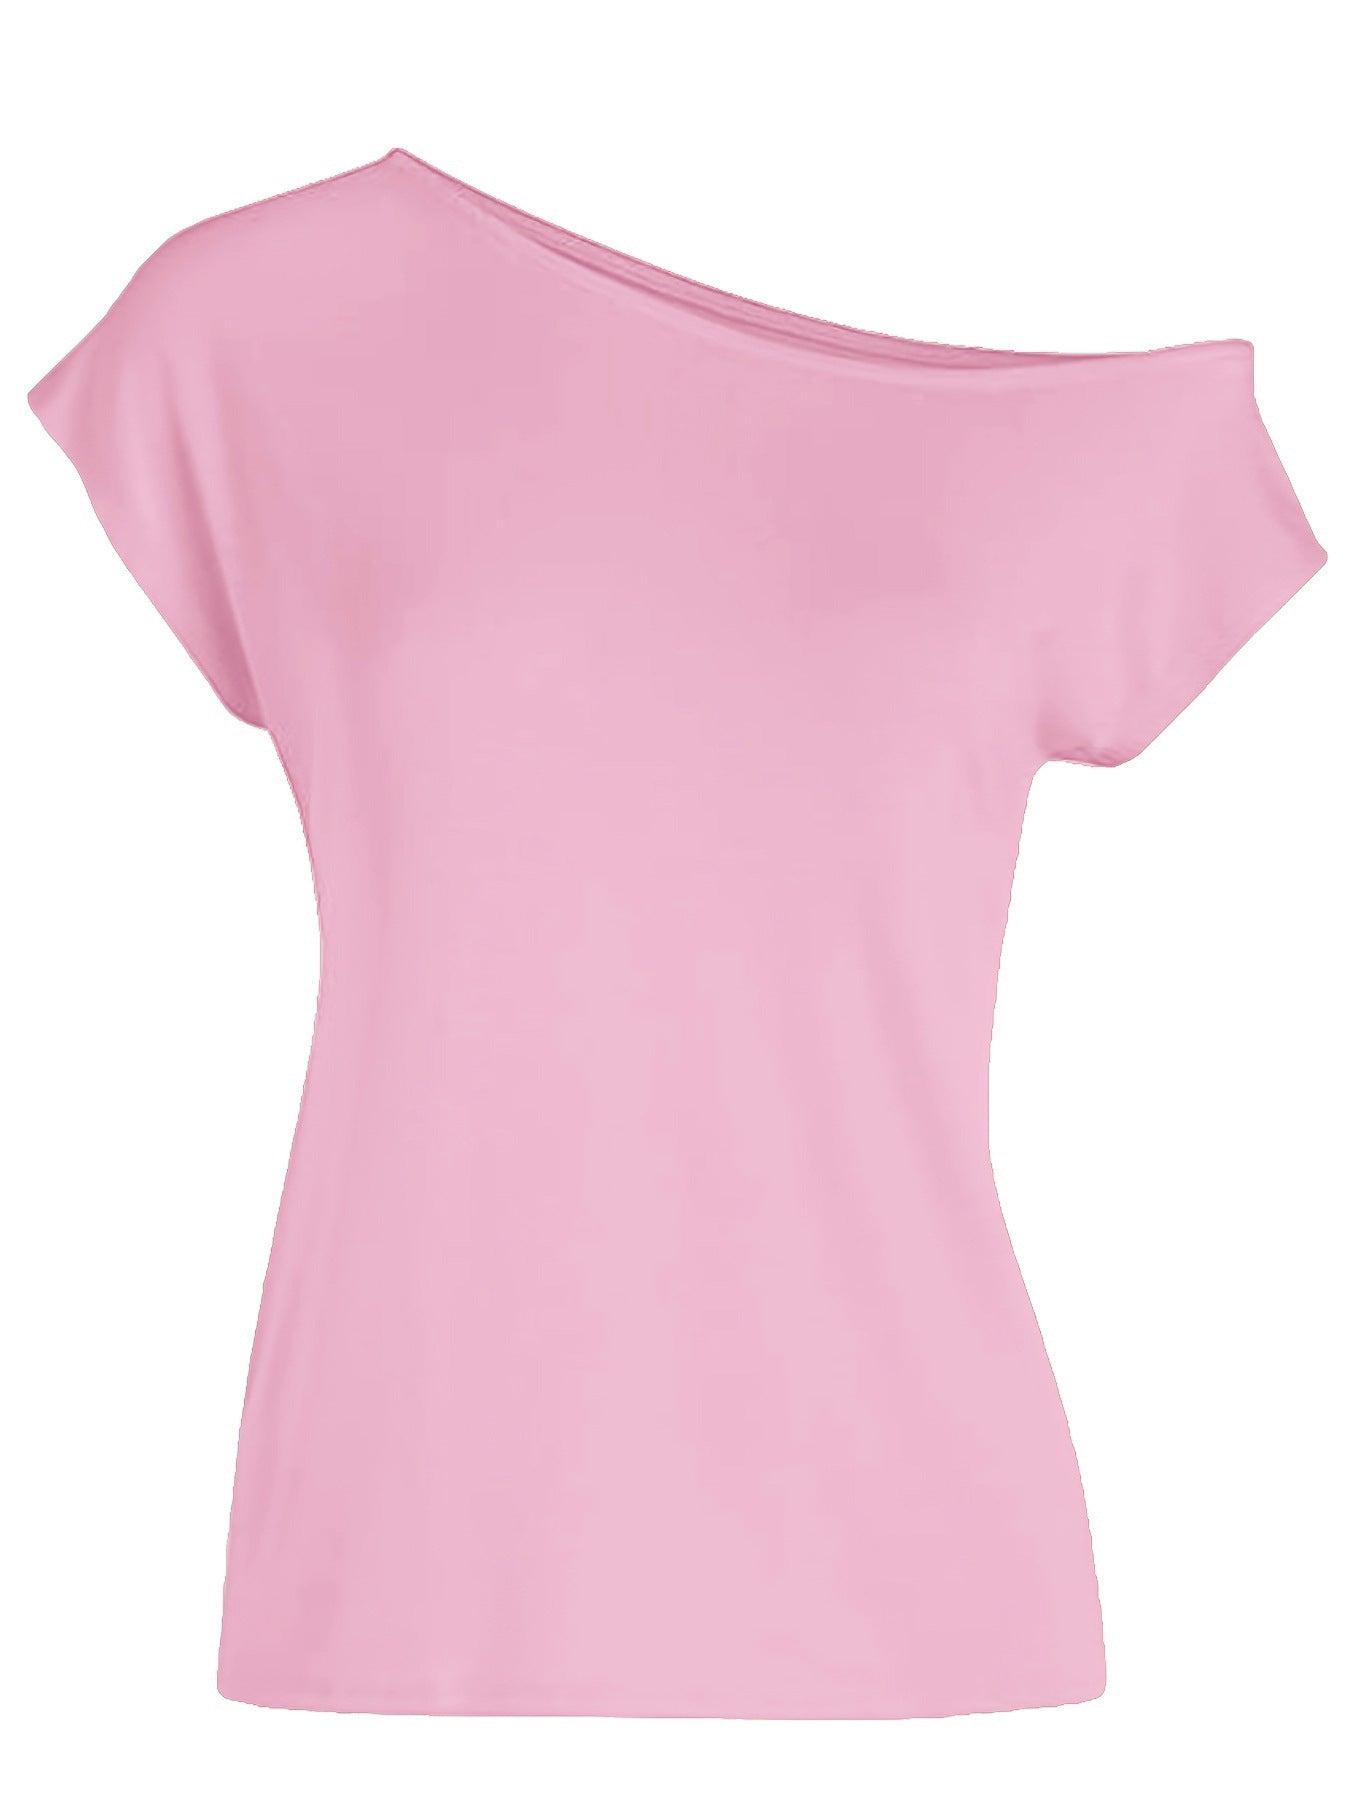 Women's One-Shoulder Cold-Shoulder T-shirt - Irregular Short Sleeves